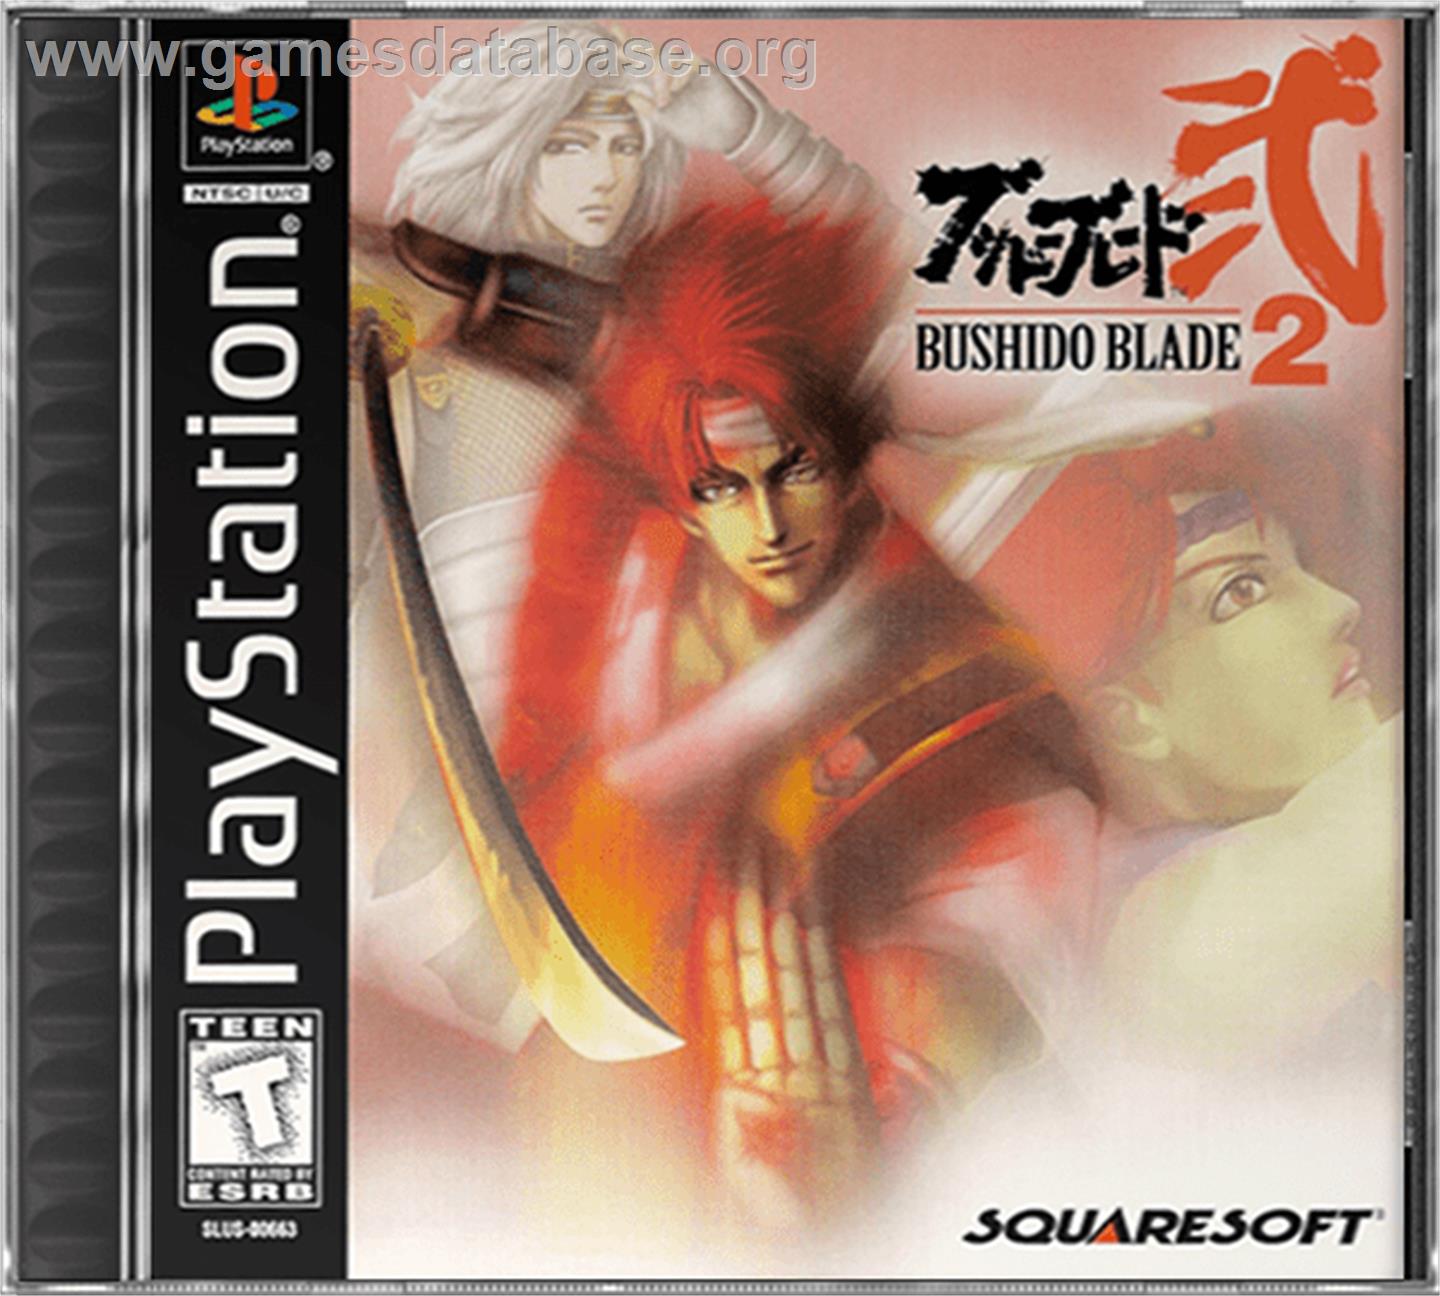 Bushido Blade 2 - Sony Playstation - Artwork - Box